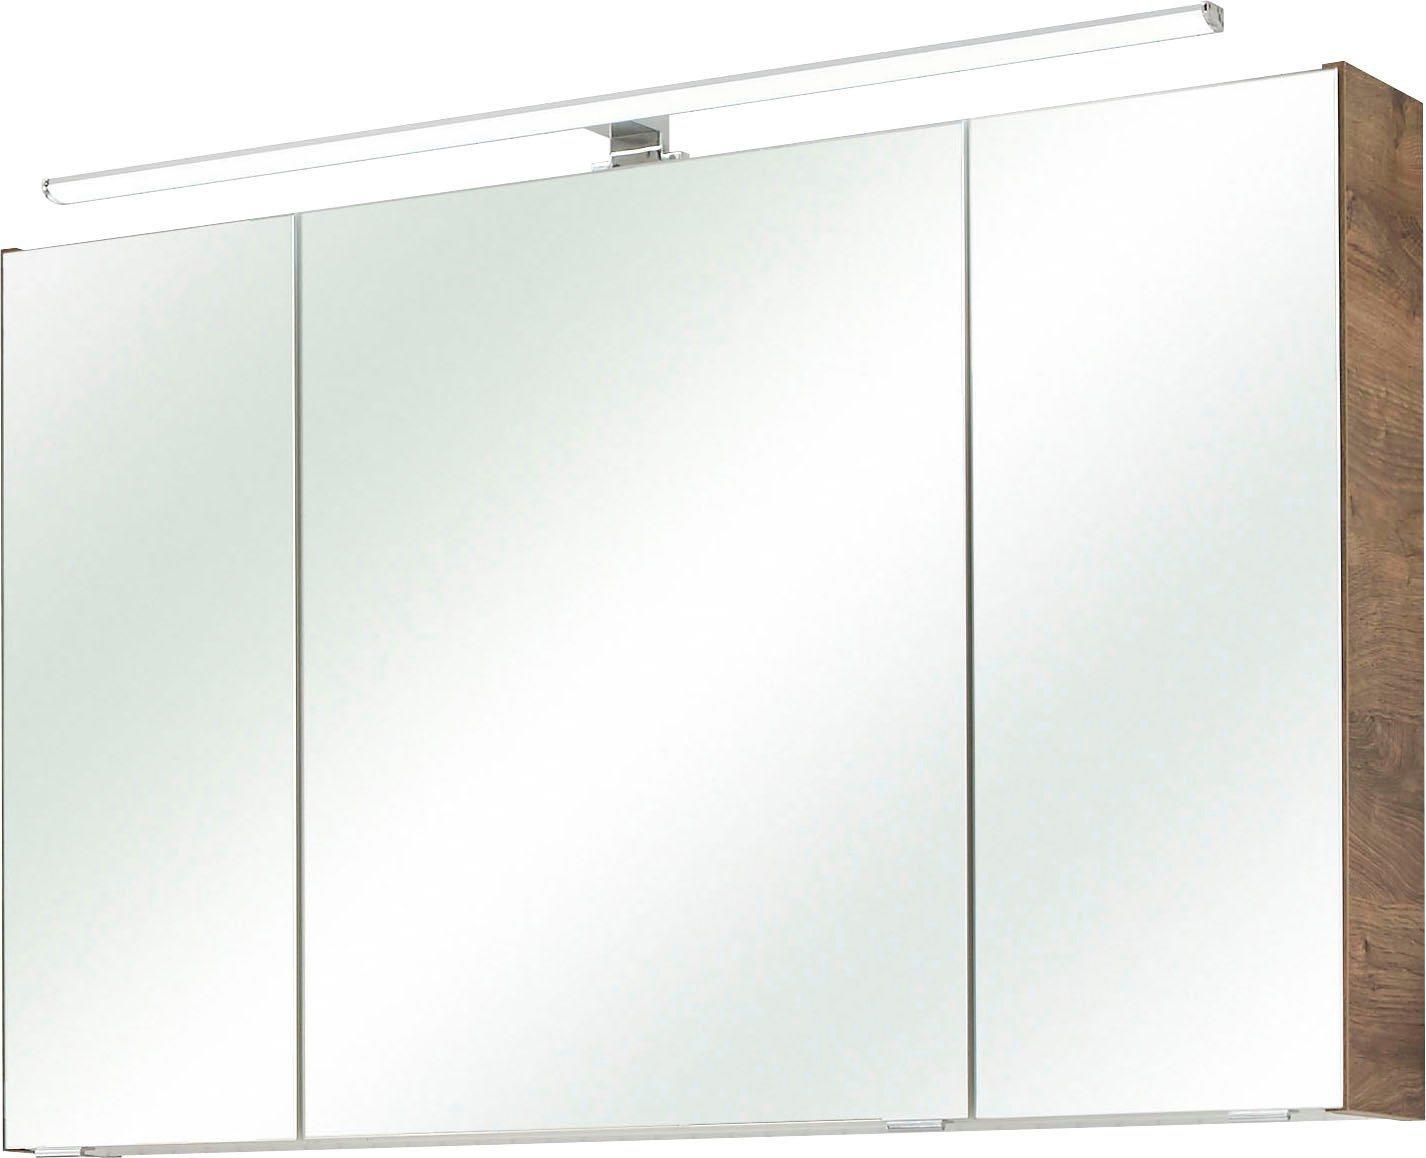 PELIPAL Filo 105 cm weiß Eiche Spiegelschrank